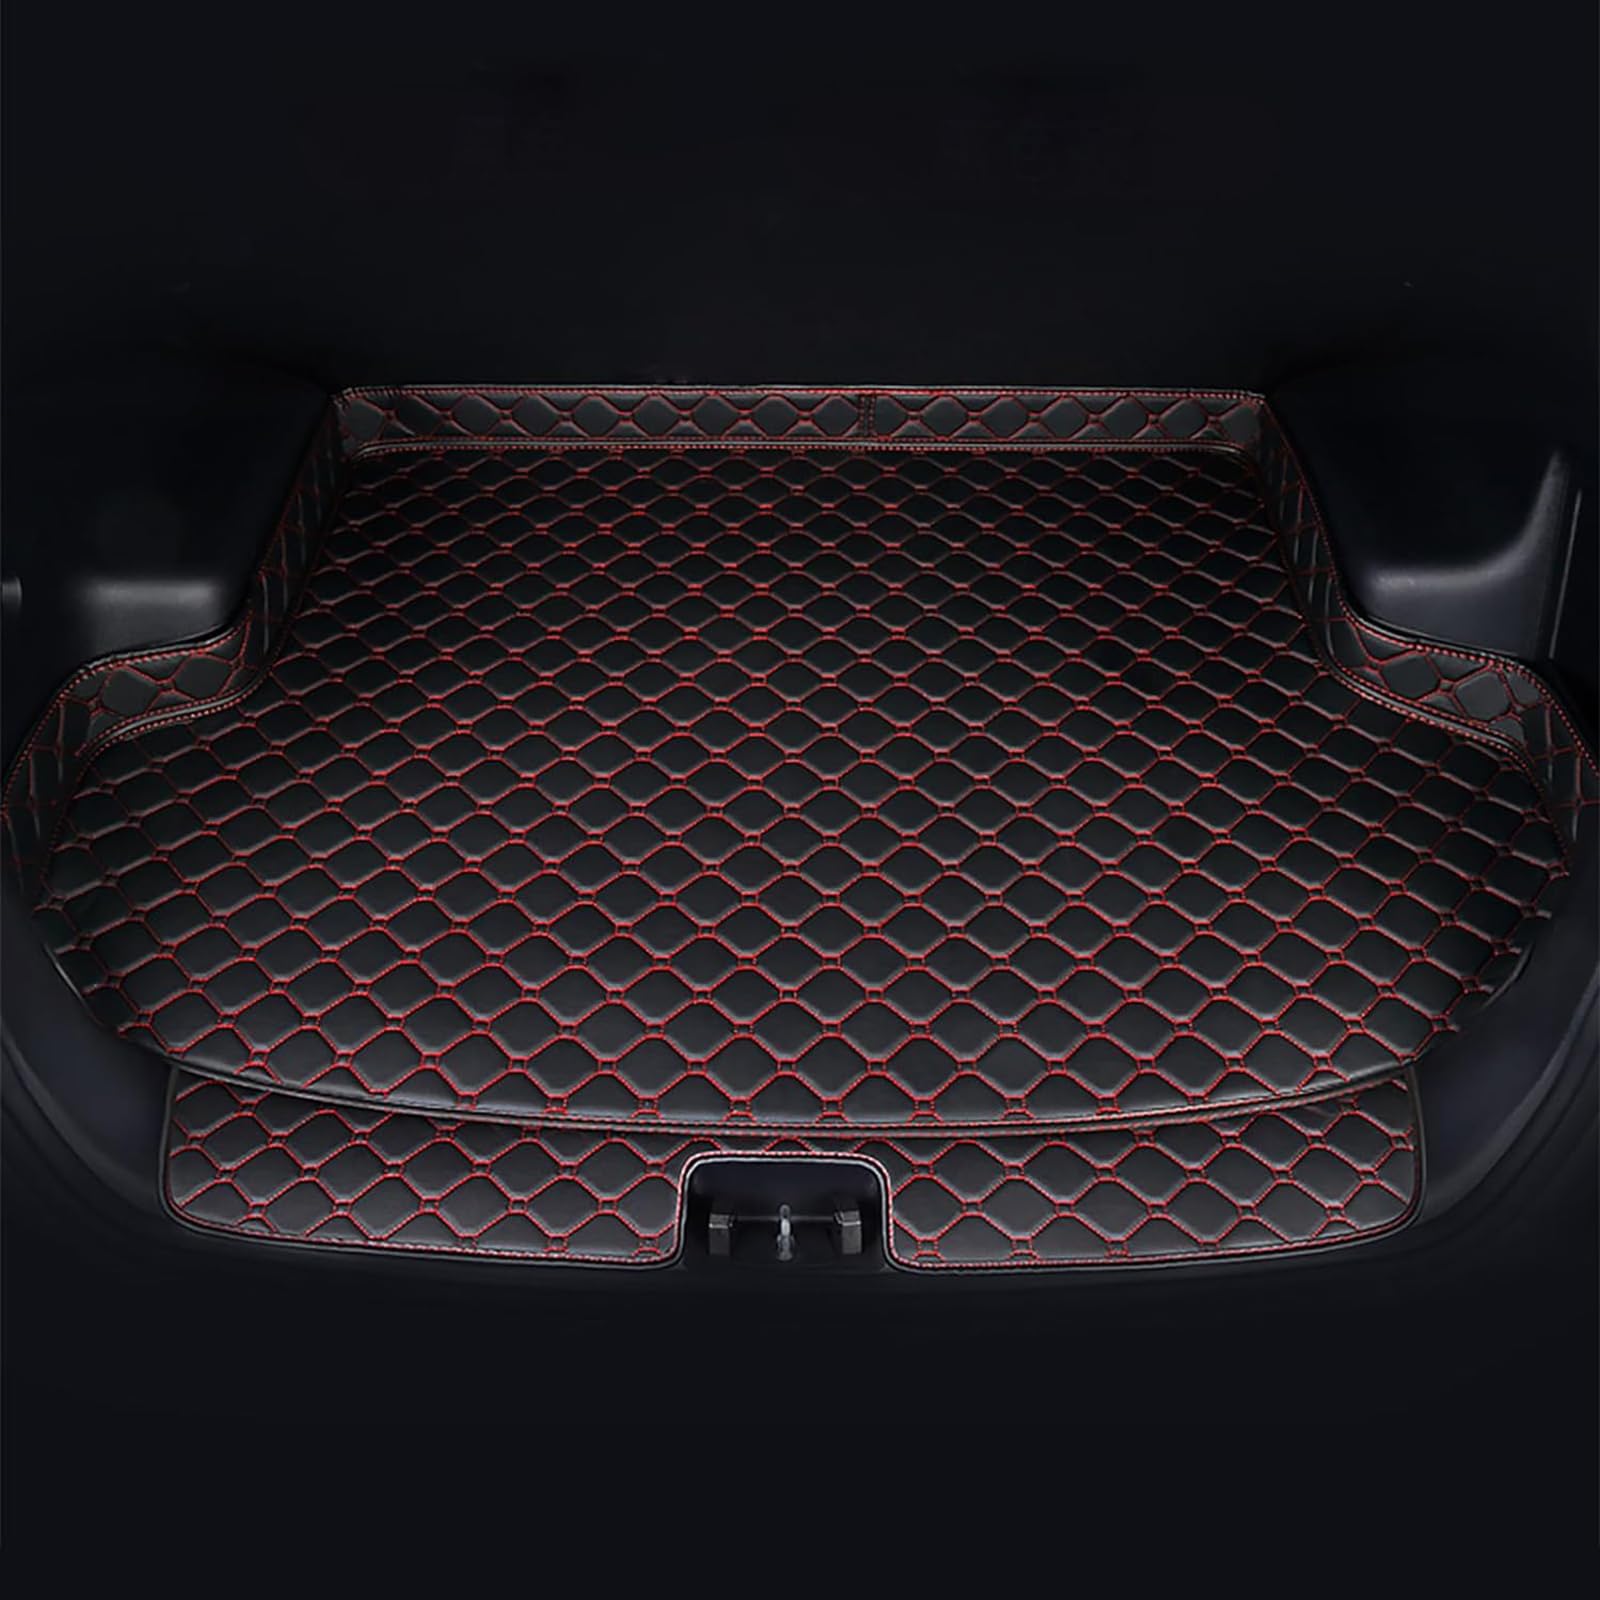 Auto Leder Kofferraummatten Für Benz GLE SUV V167 (7-seat) 2019-2022, Wasserdicht rutschfest Kofferraumwanne Allwetter Cargo Teppich Schutzmatte Interieur Zubehör,C/Black-Red von FNUQKREF